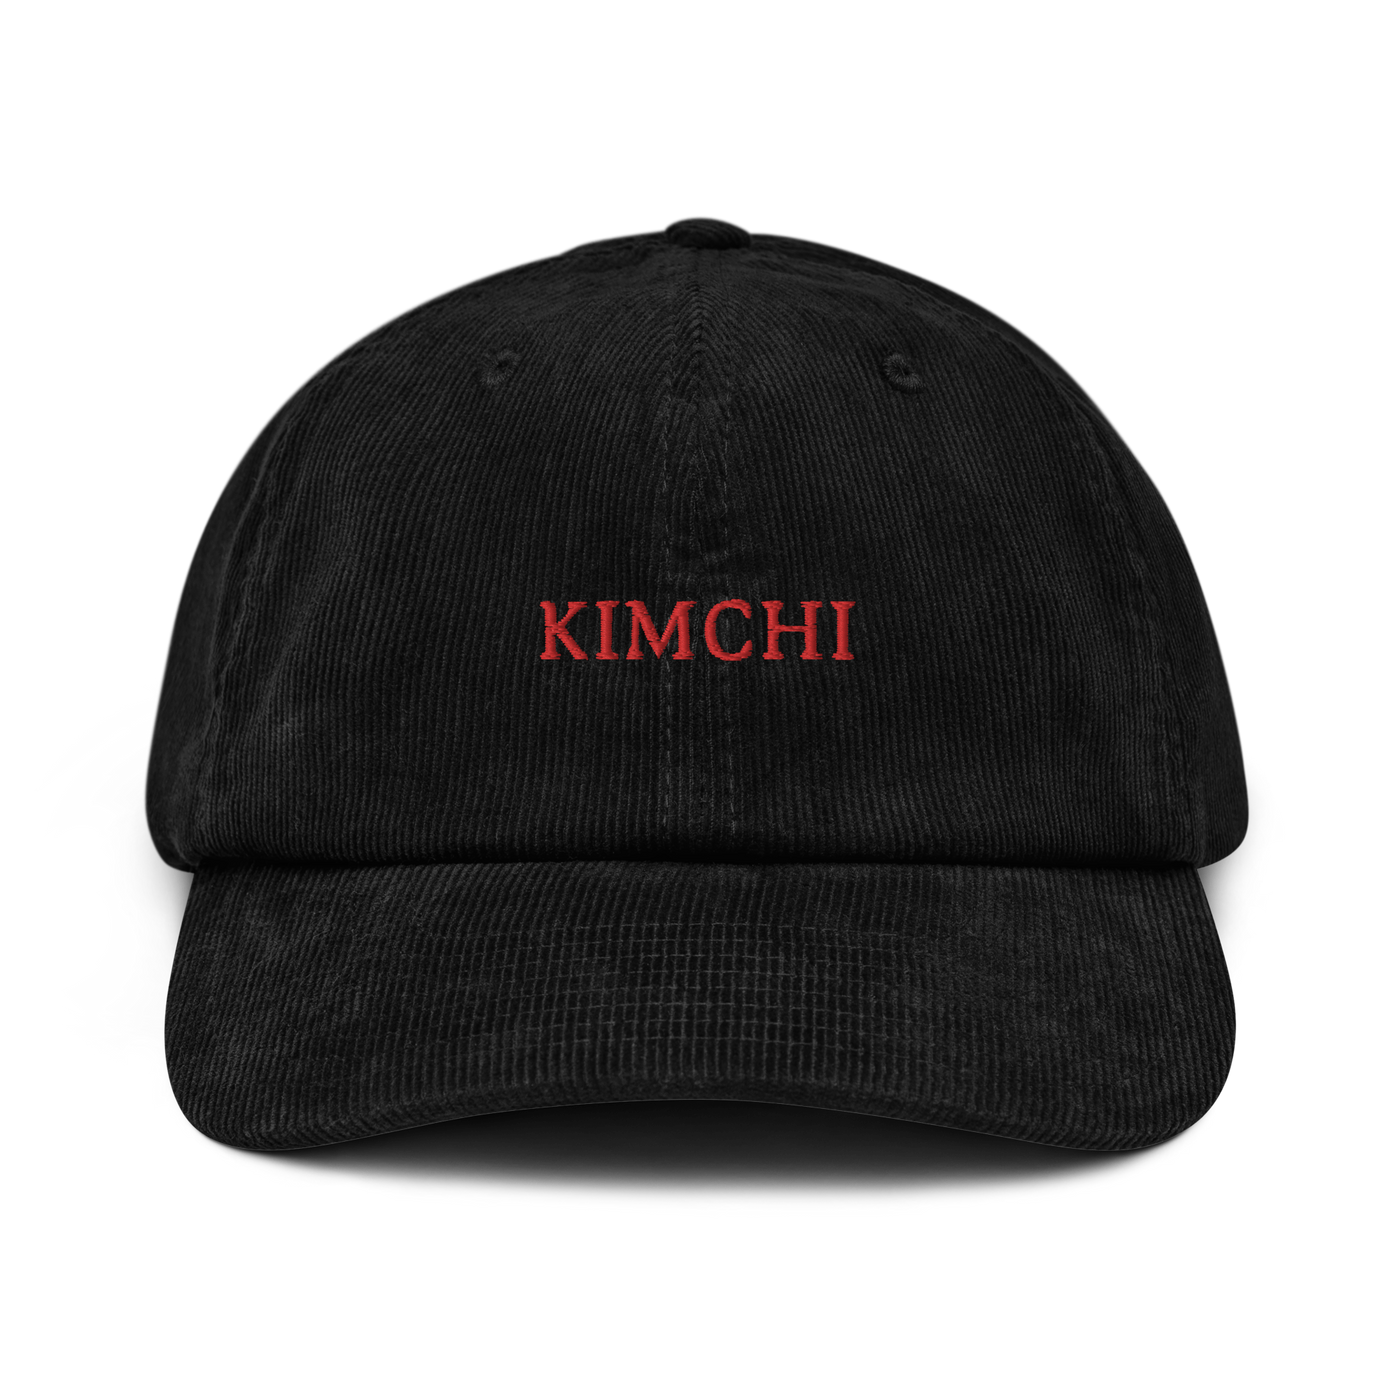 Kimchi Corduroy hat